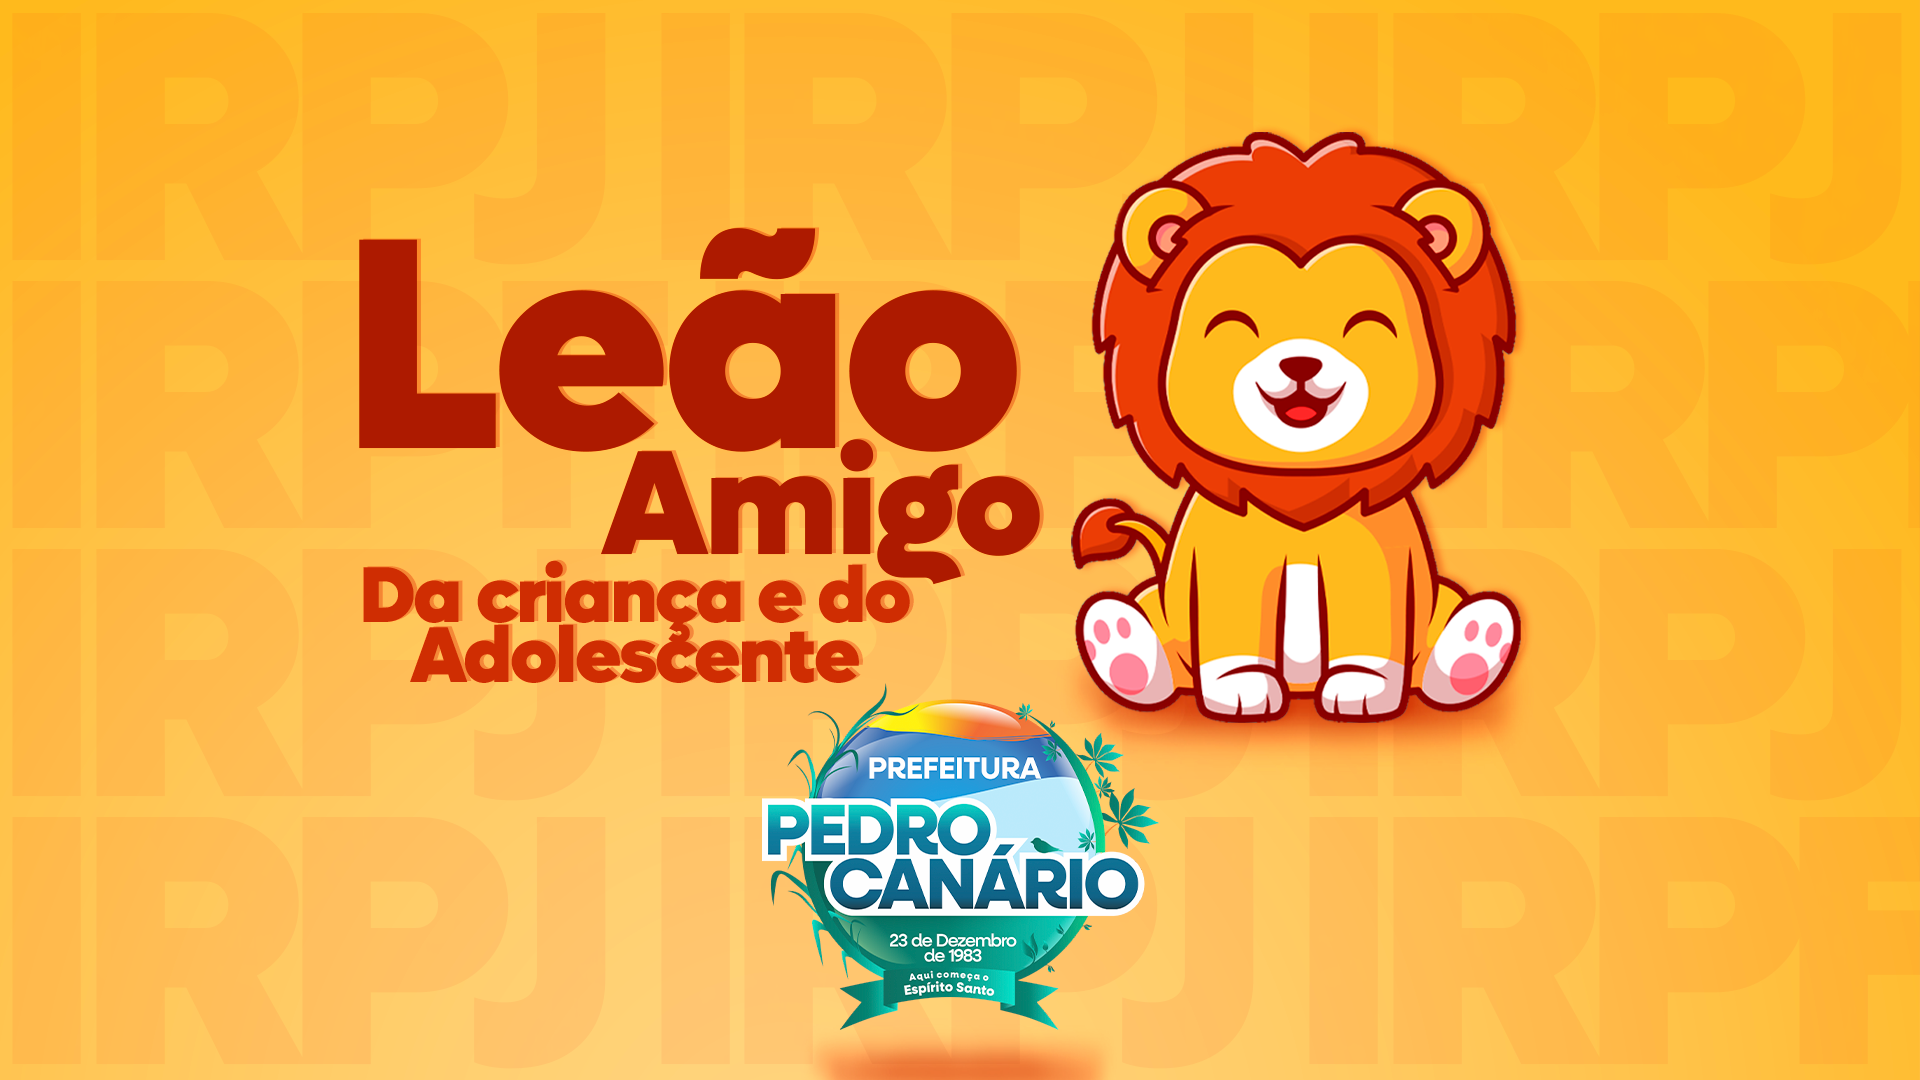 NOTÍCIA: Prefeitura de Pedro Canário lança campanha “Leão Amigo” para incentivar destinação do Imposto de Renda aos fundos públicos